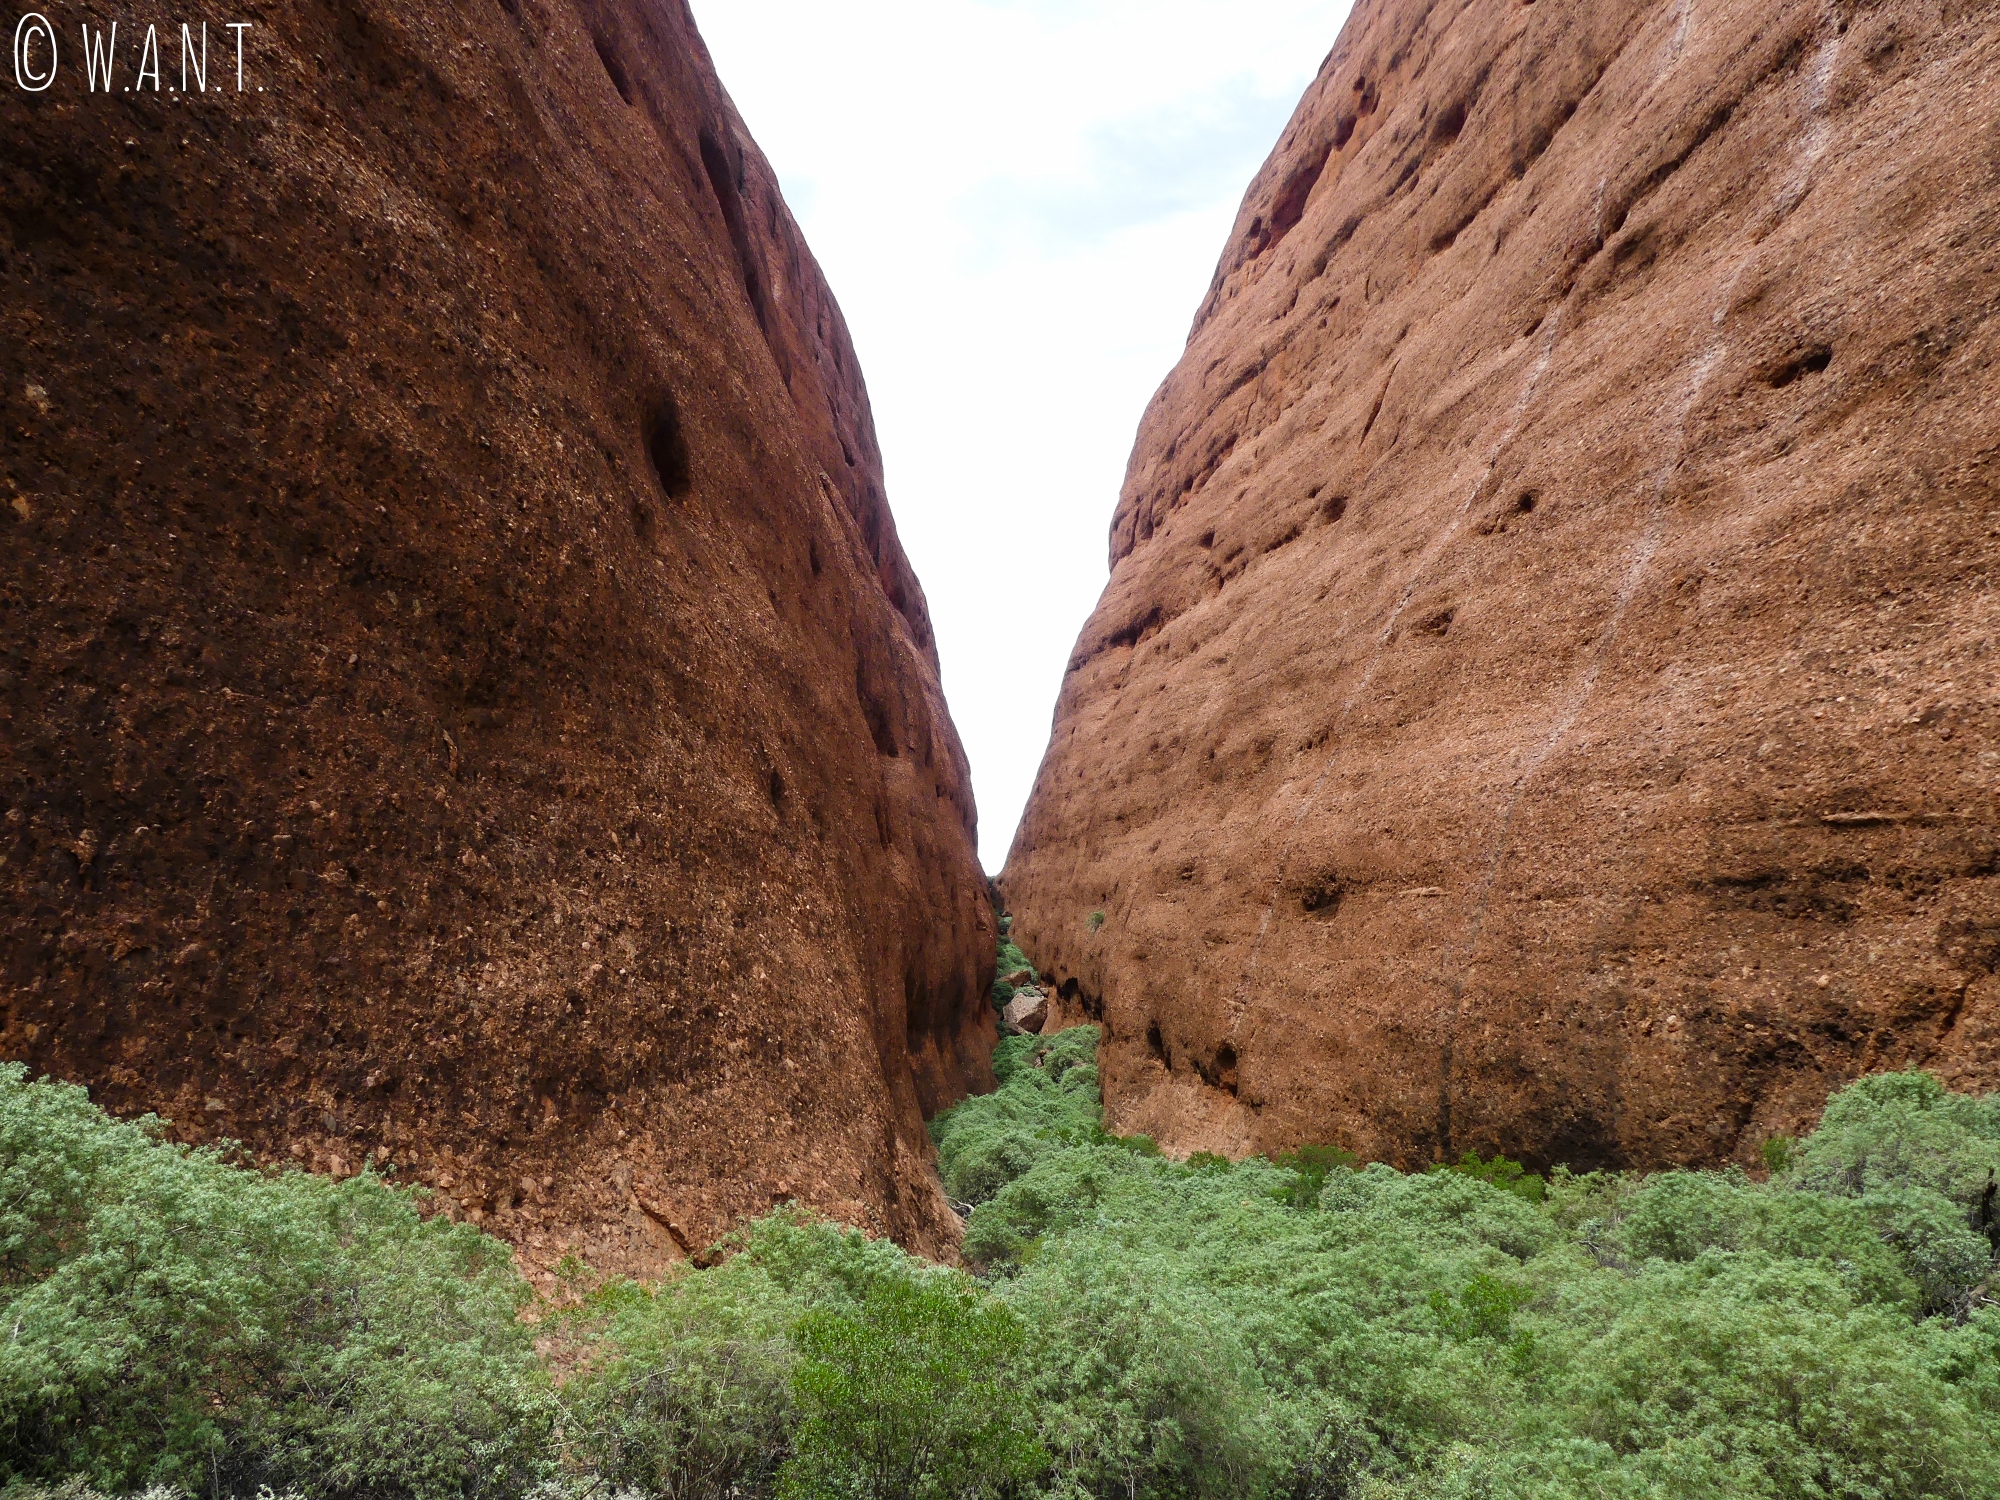 Le trail Walpa Gorge dans le parc national Uluru-Kata Tjuta permet d'accéder à ce point de vue